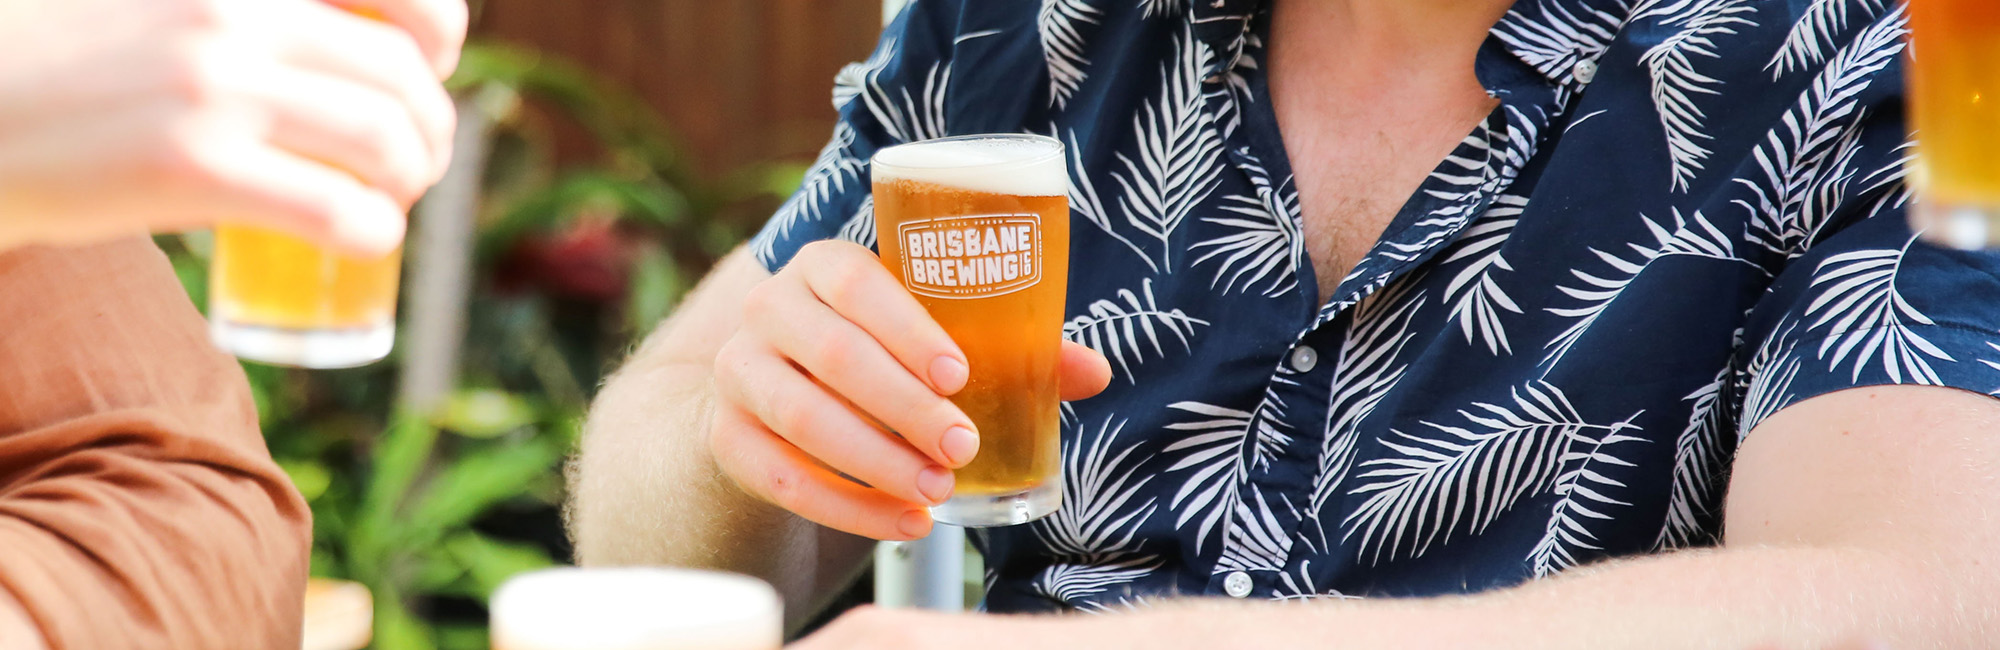 Best Beer In Brisbane